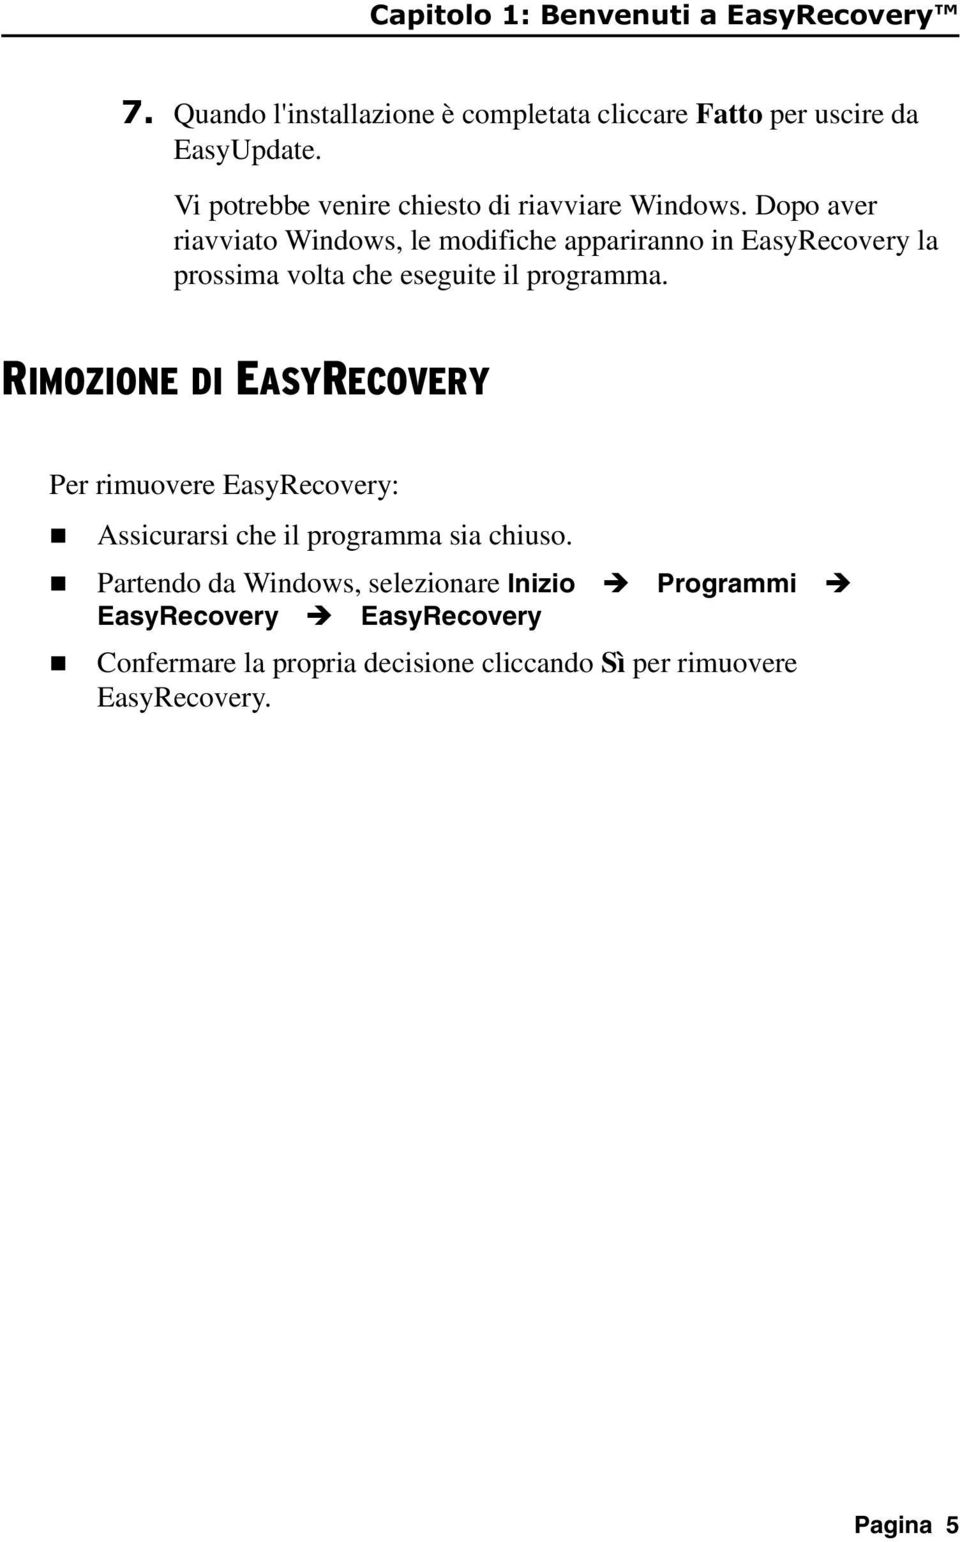 Dopo aver riavviato Widows, le modifiche apparirao i EasyRecovery la prossima volta che eseguite il programma.